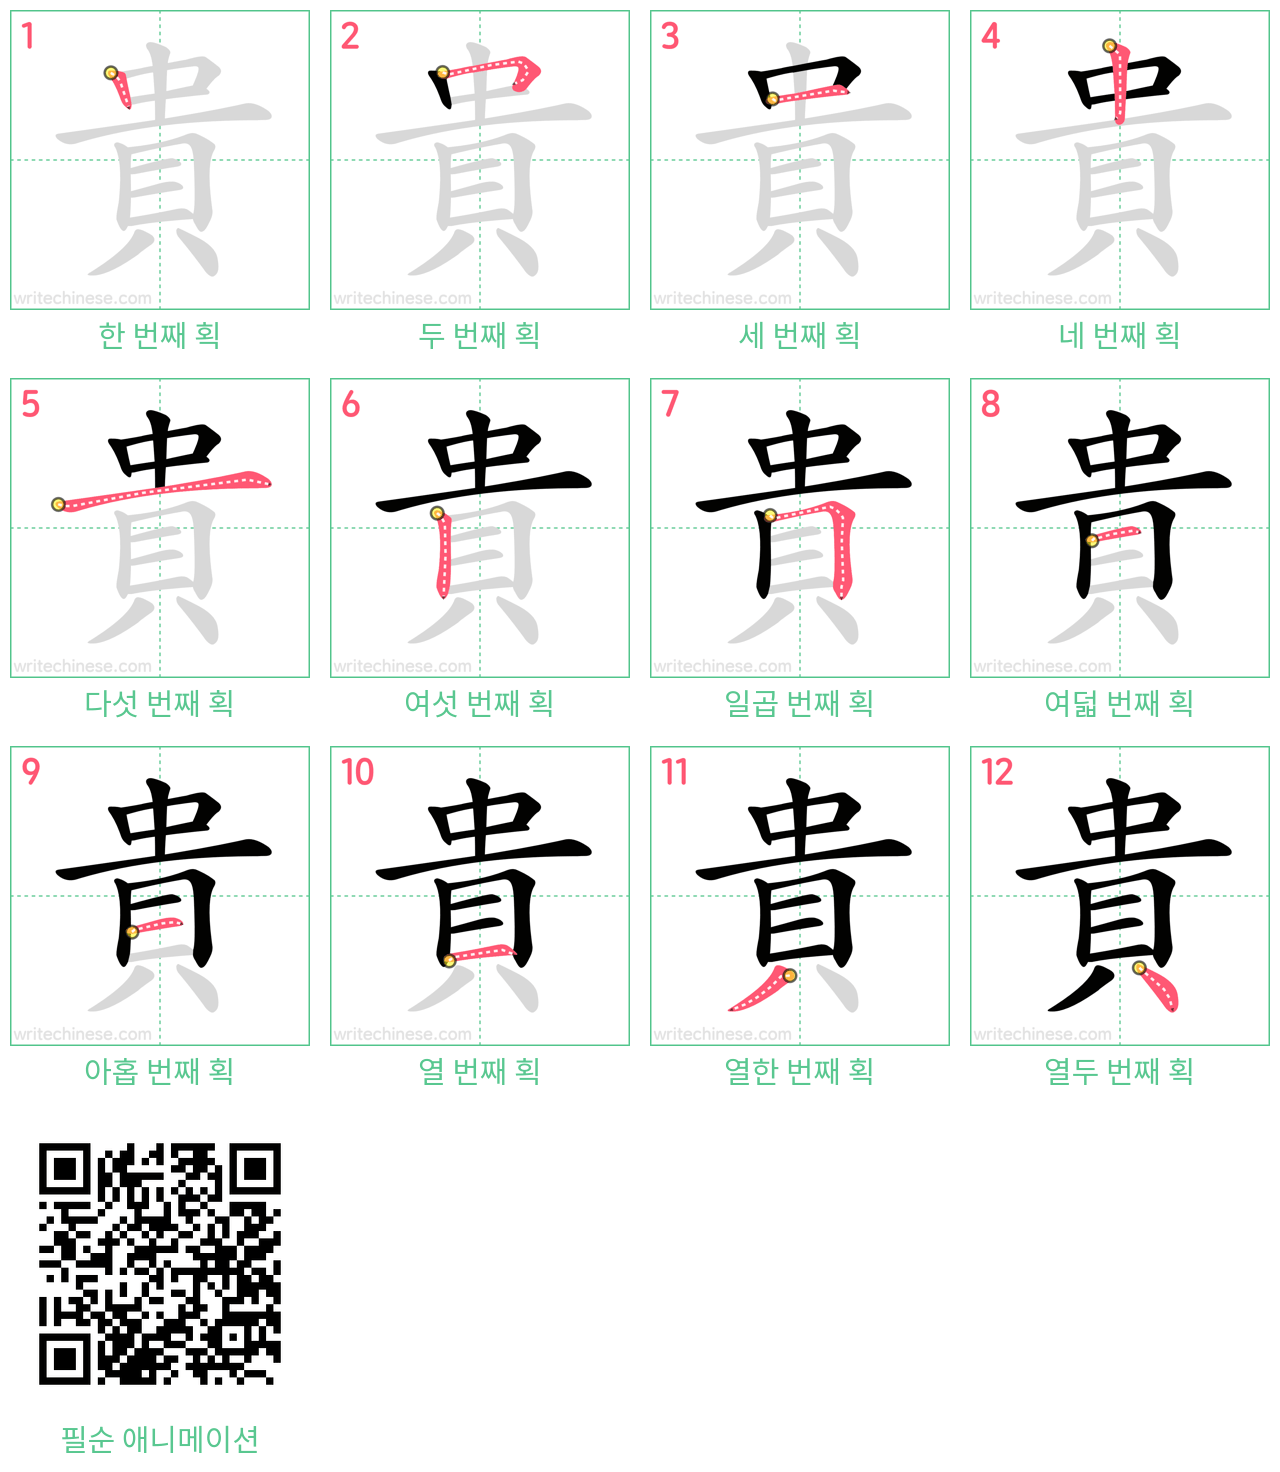 貴 step-by-step stroke order diagrams